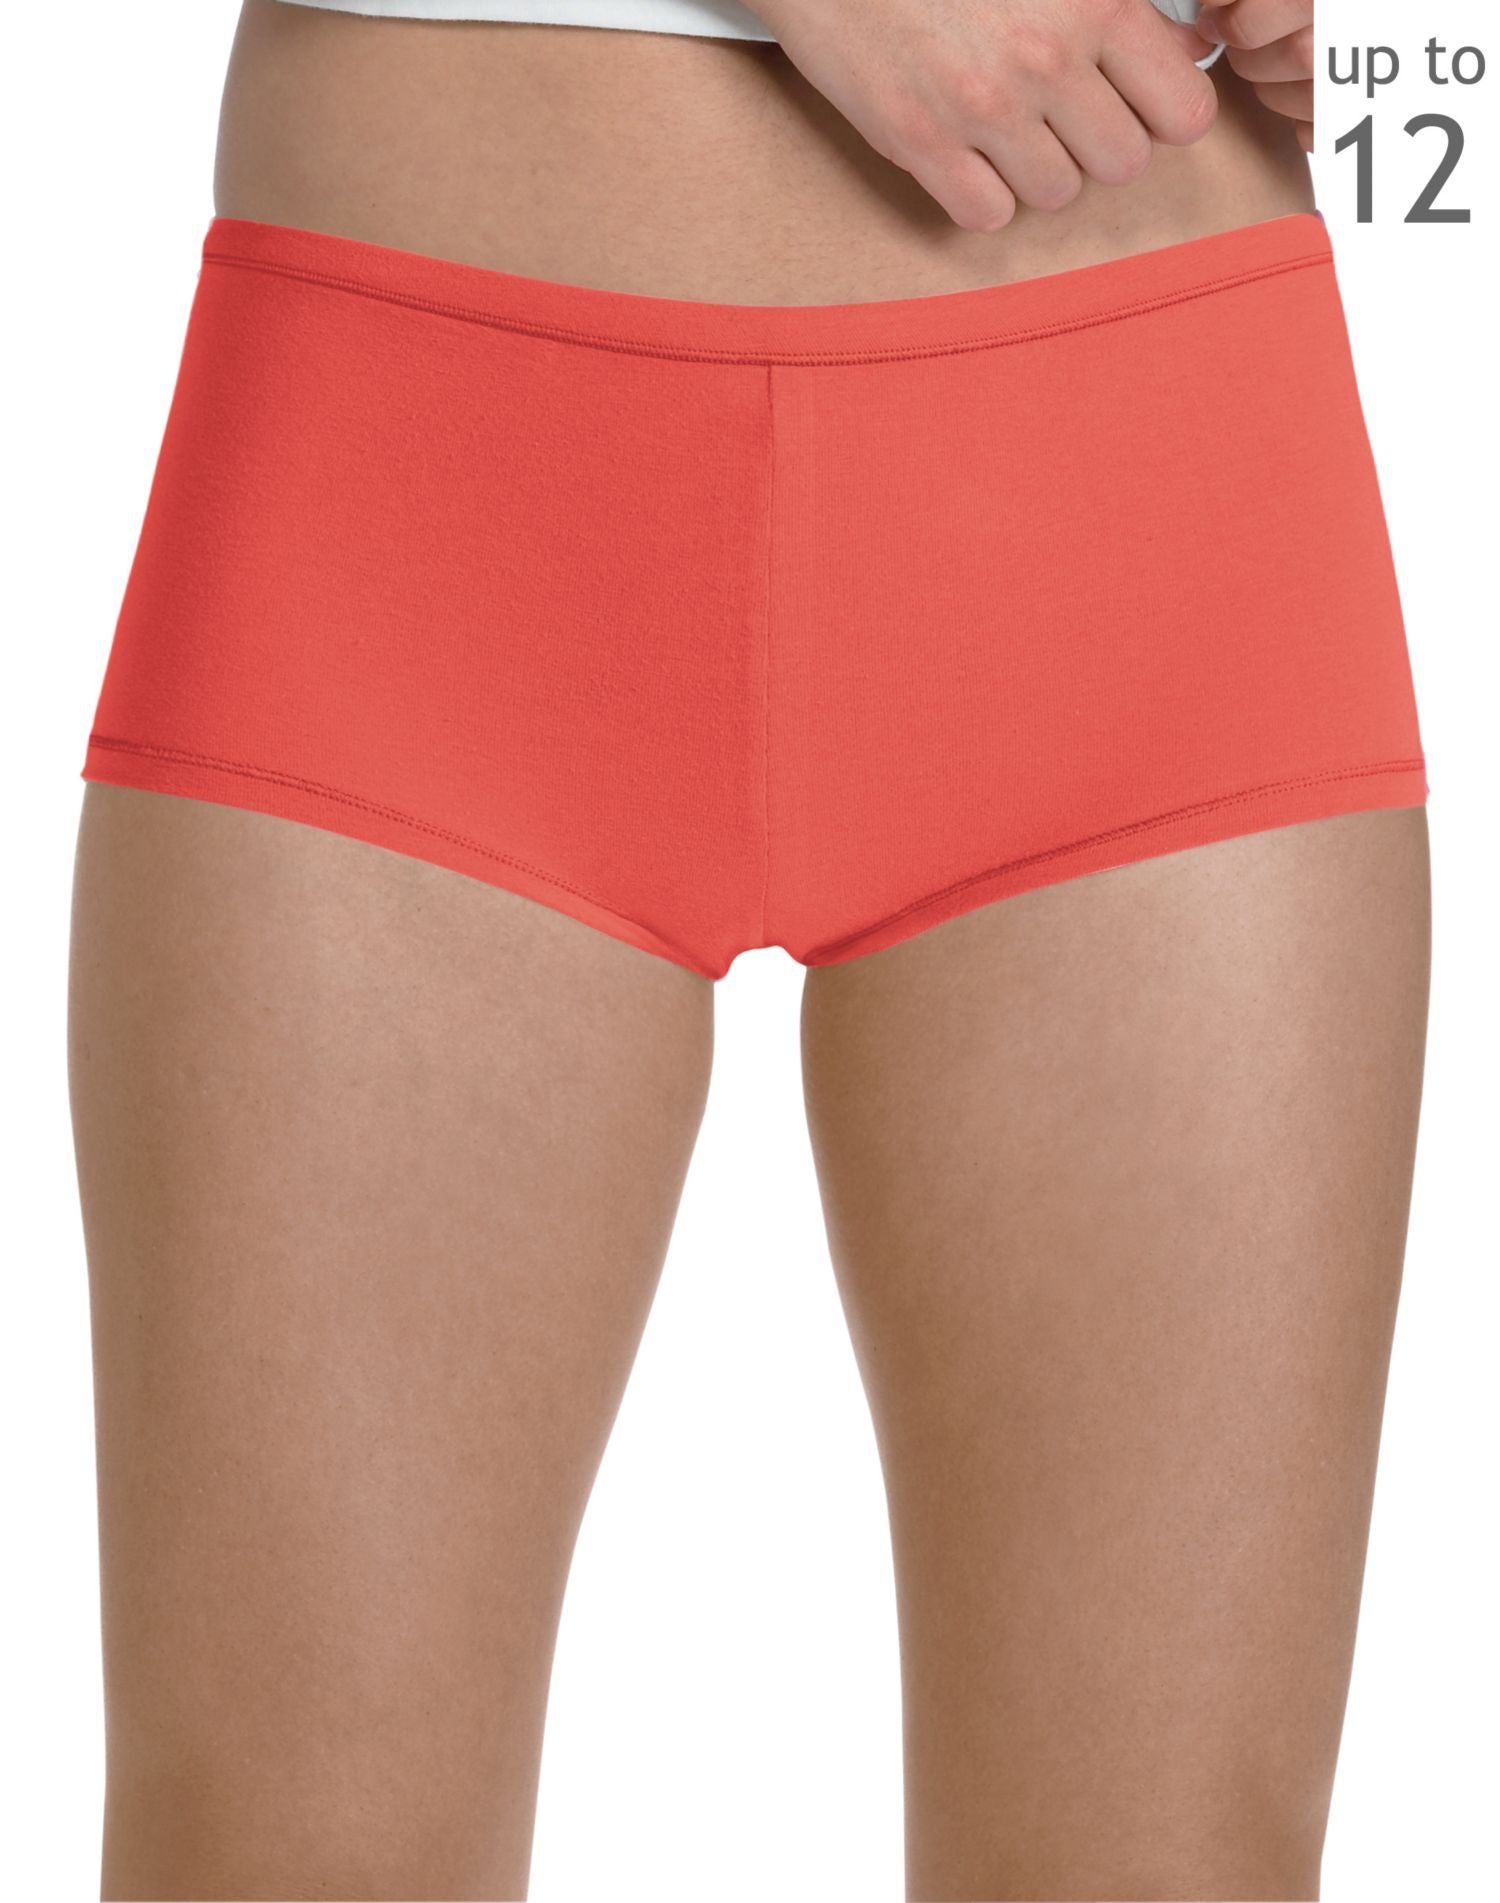 E49PAS - Hanes Women's Plus Boy Short Panties with ComfortSoft